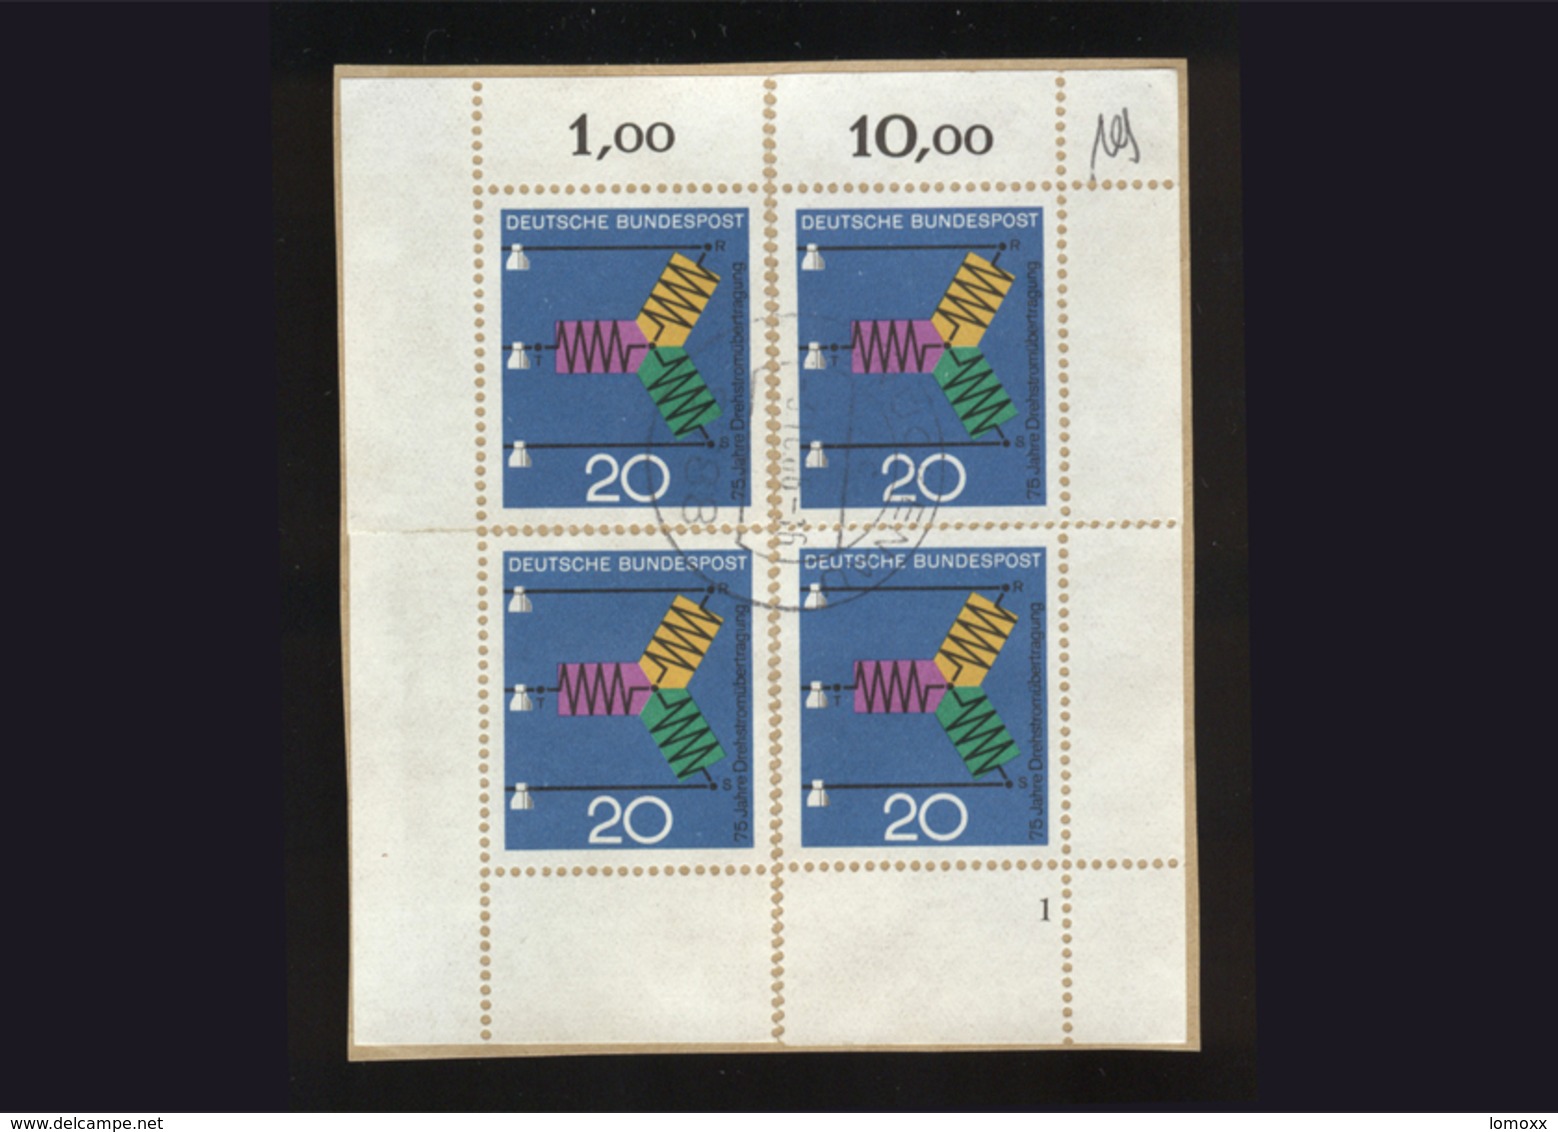 BRD 1966, Briefstück Mit 4 X Eckrand Michel-Nr. 521, Fortschritt In Technik Und Wissenschaft, 20 Pf., Gestempelt - Gebraucht